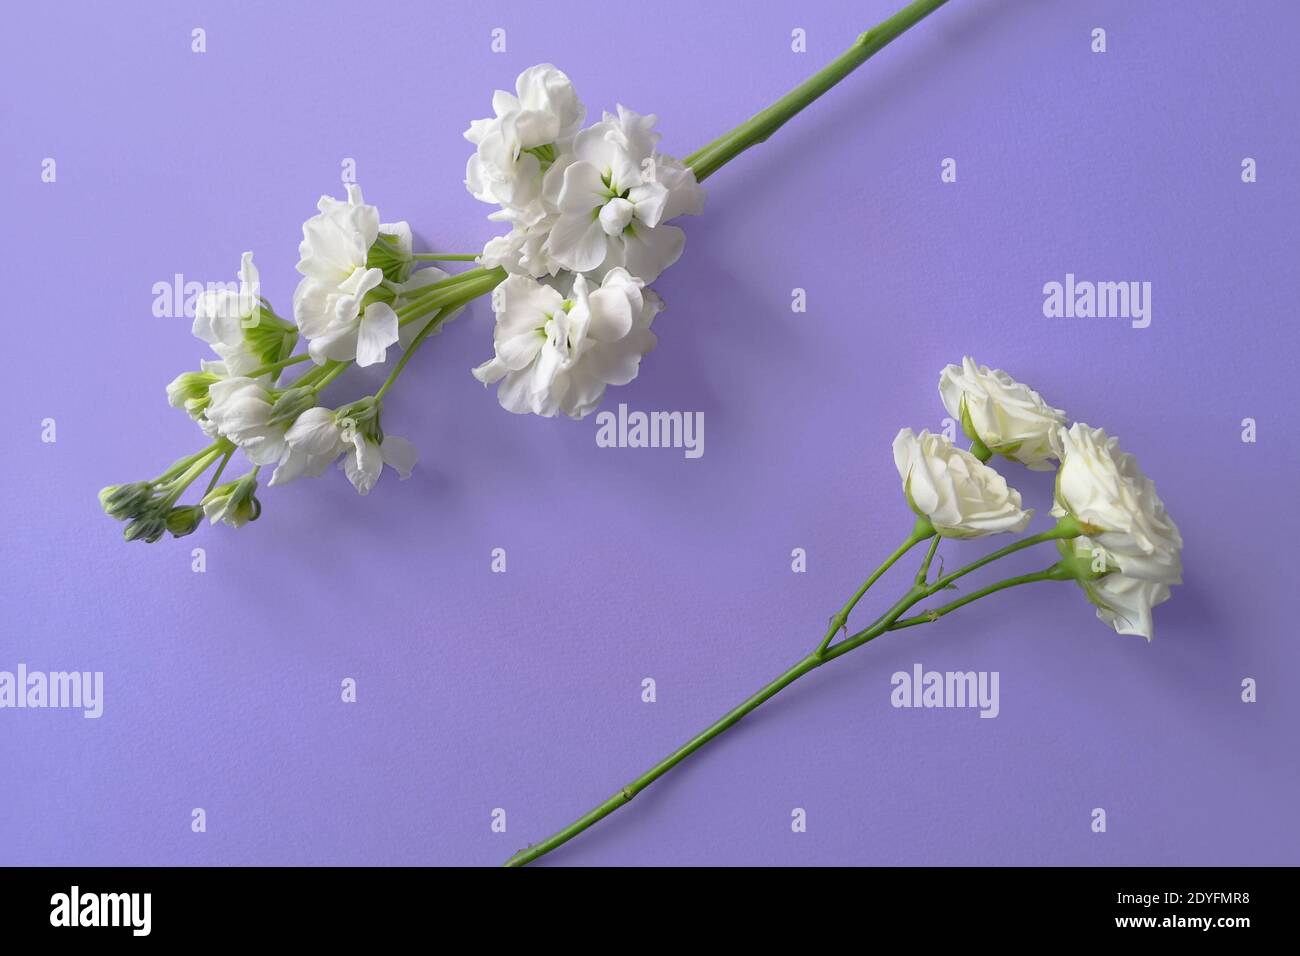 Vue de dessus de deux fleurs blanches sur fond lilas. Cadre fleuri. Style de vie Banque D'Images